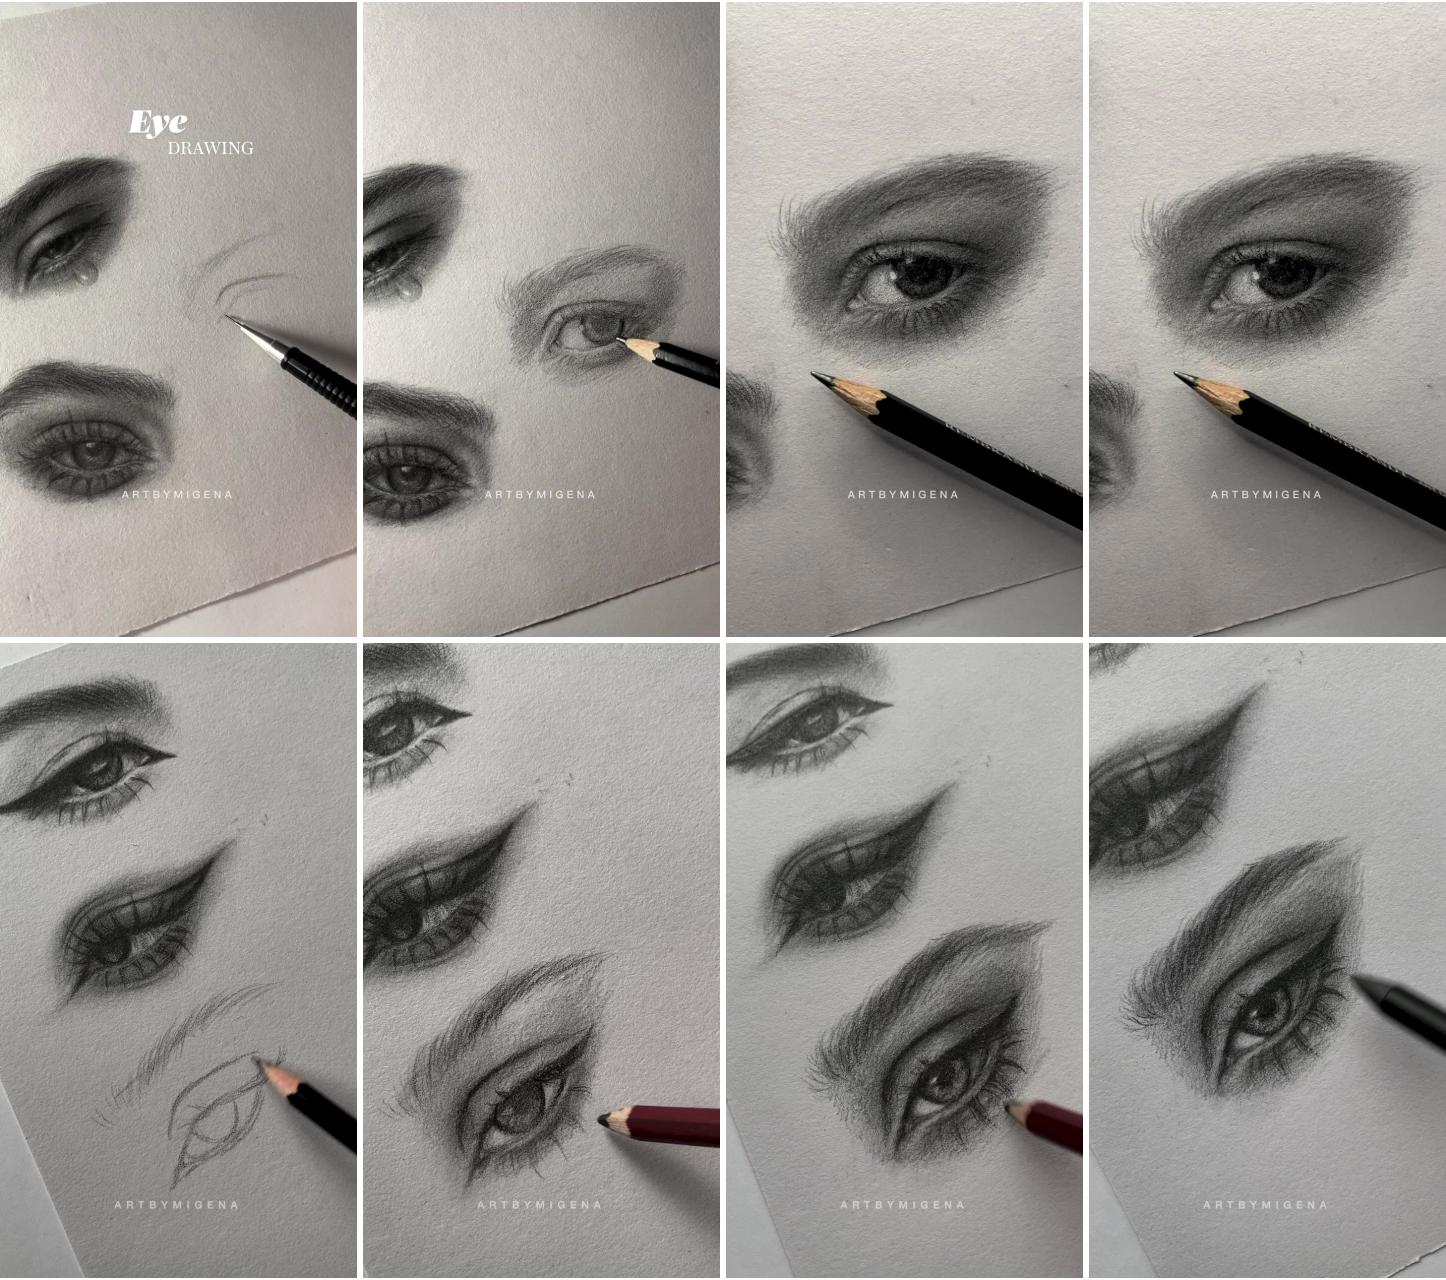 Eye drawing | eye sketching #art